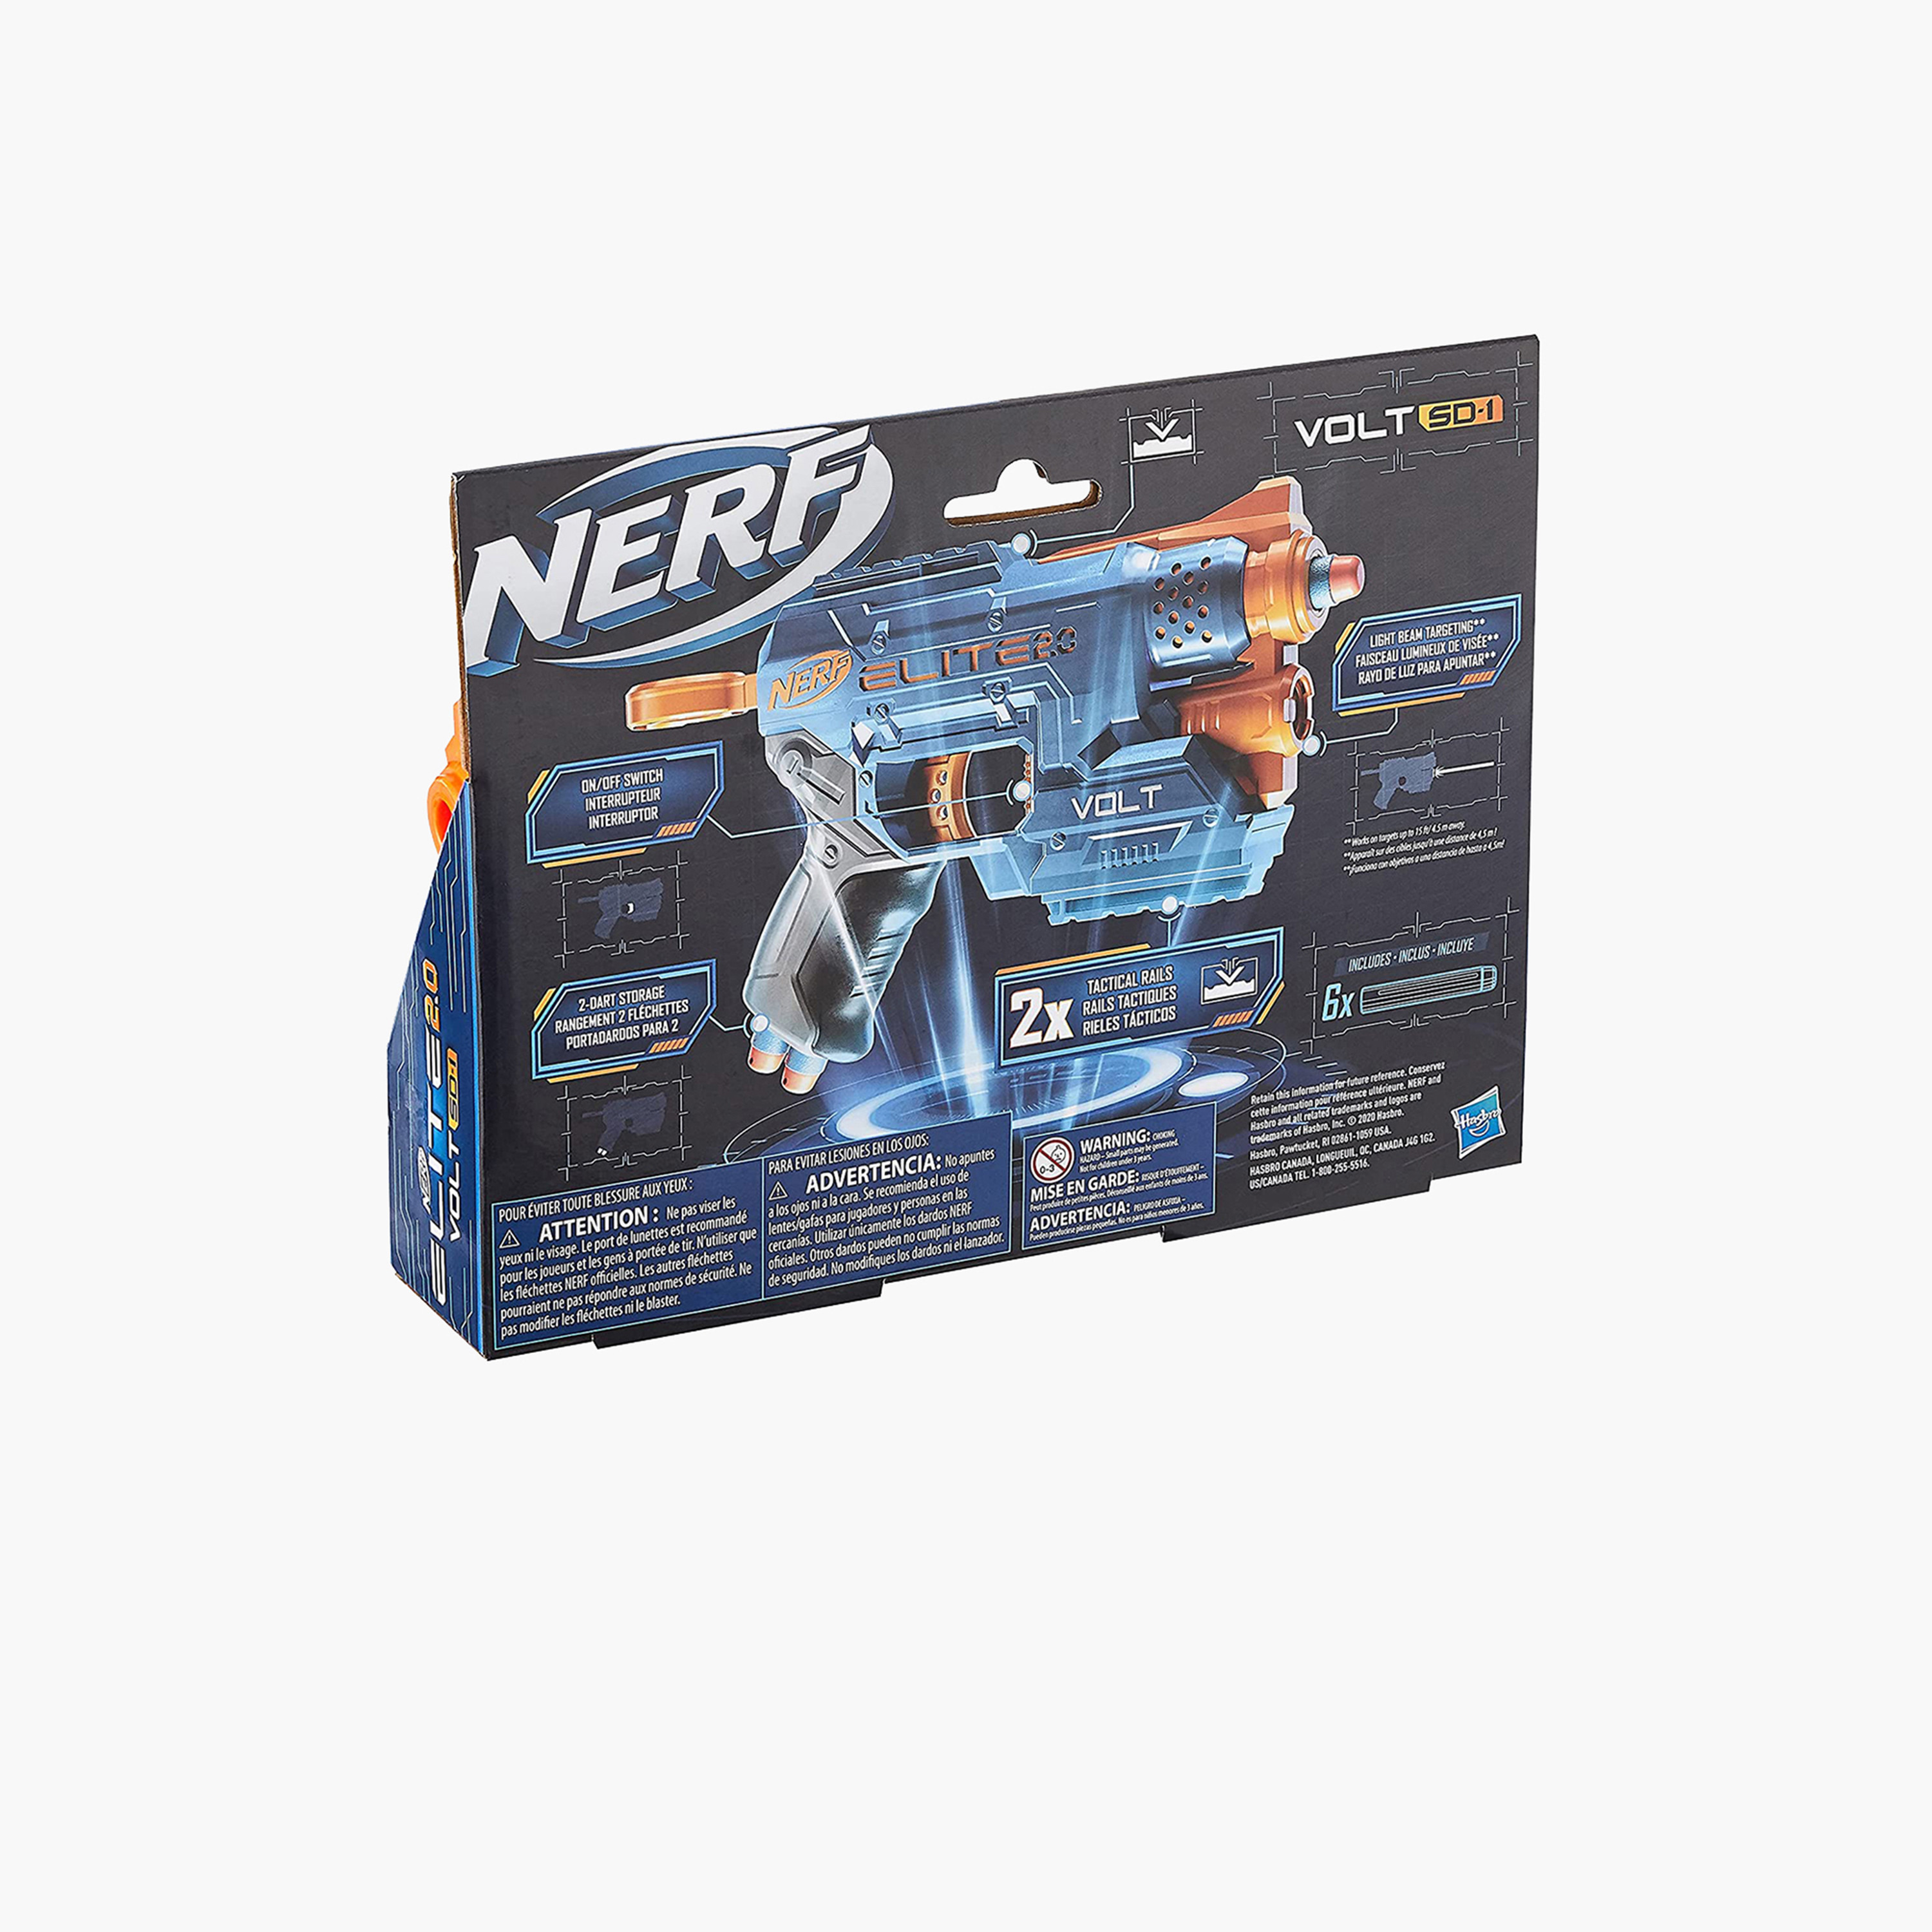 Buy　Dart　SD-1　for　2.0　Babies　Online　Nerf　KSA　Gun　Elite　in　Volt　Centrepoint